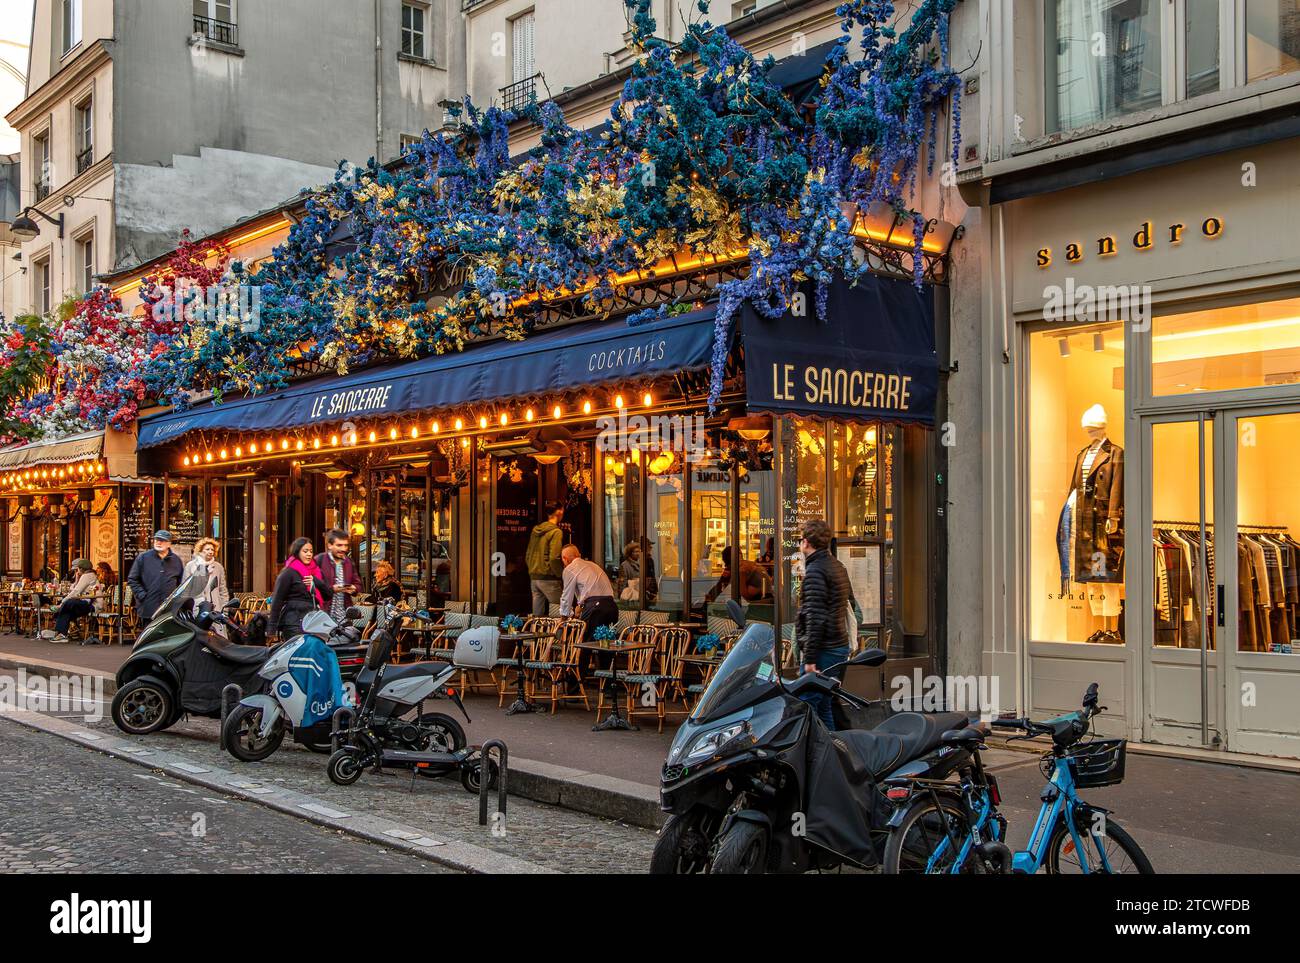 Le Sancerre in der Rue des Abbesses, eine französische Brasserie, Café in Montmartre im 18. Arrondissement von Paris, Frankreich Stockfoto